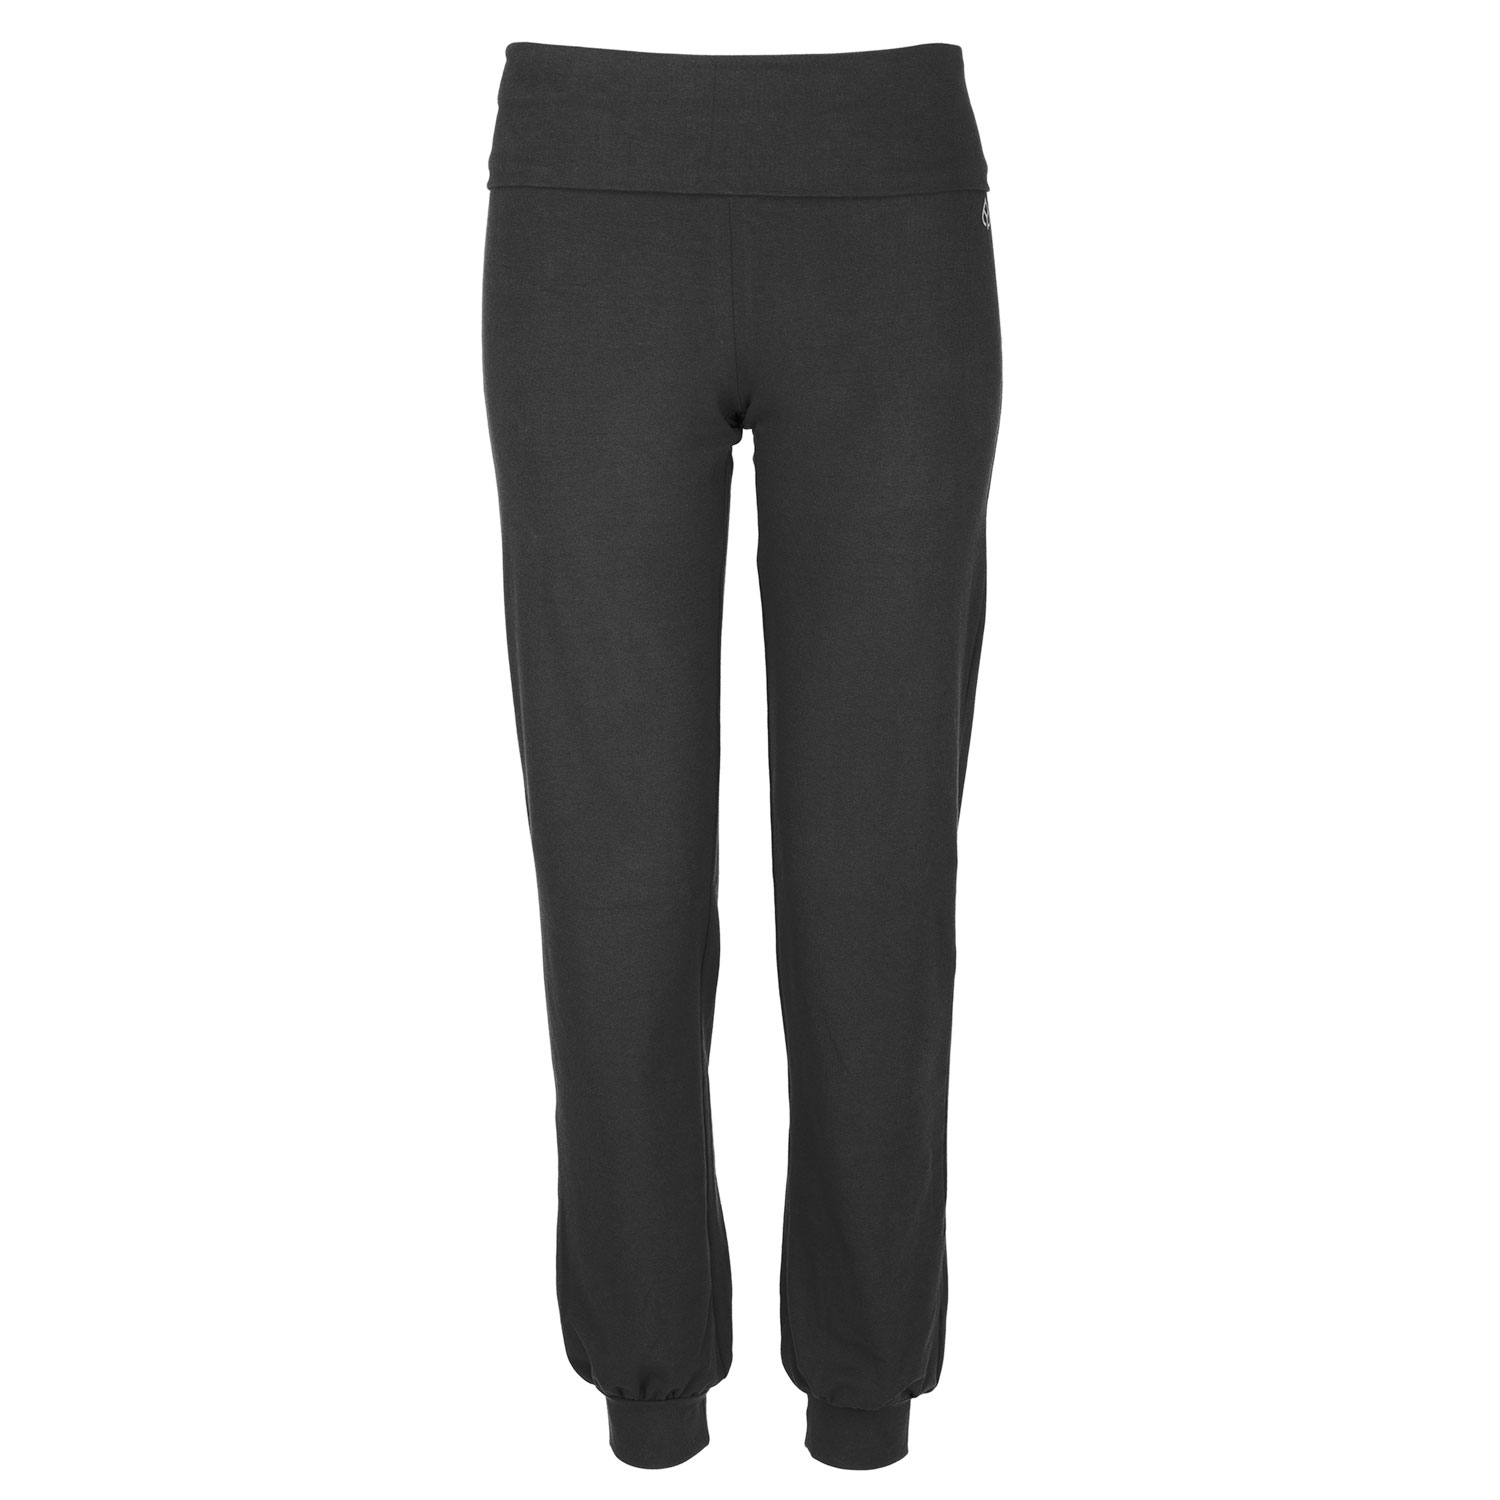 Pantalon de yoga Confort Femme - Coton Bio Noir - Vêtements de